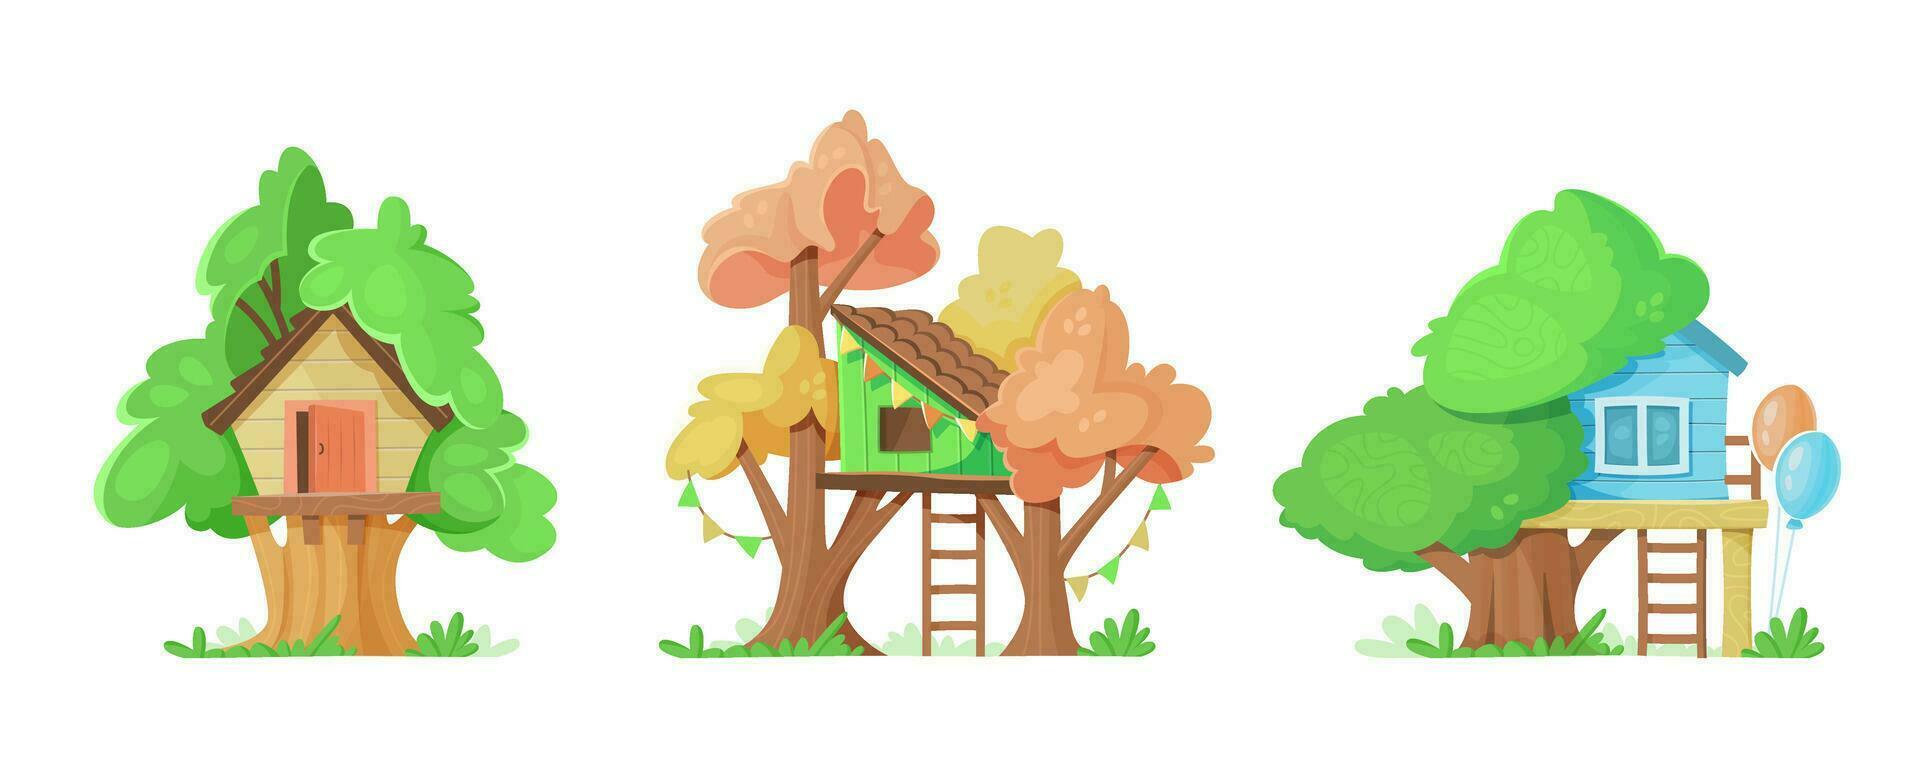 einstellen von anders Häuser auf Bäume zum Kinder. Karikatur Vektor Illustration.